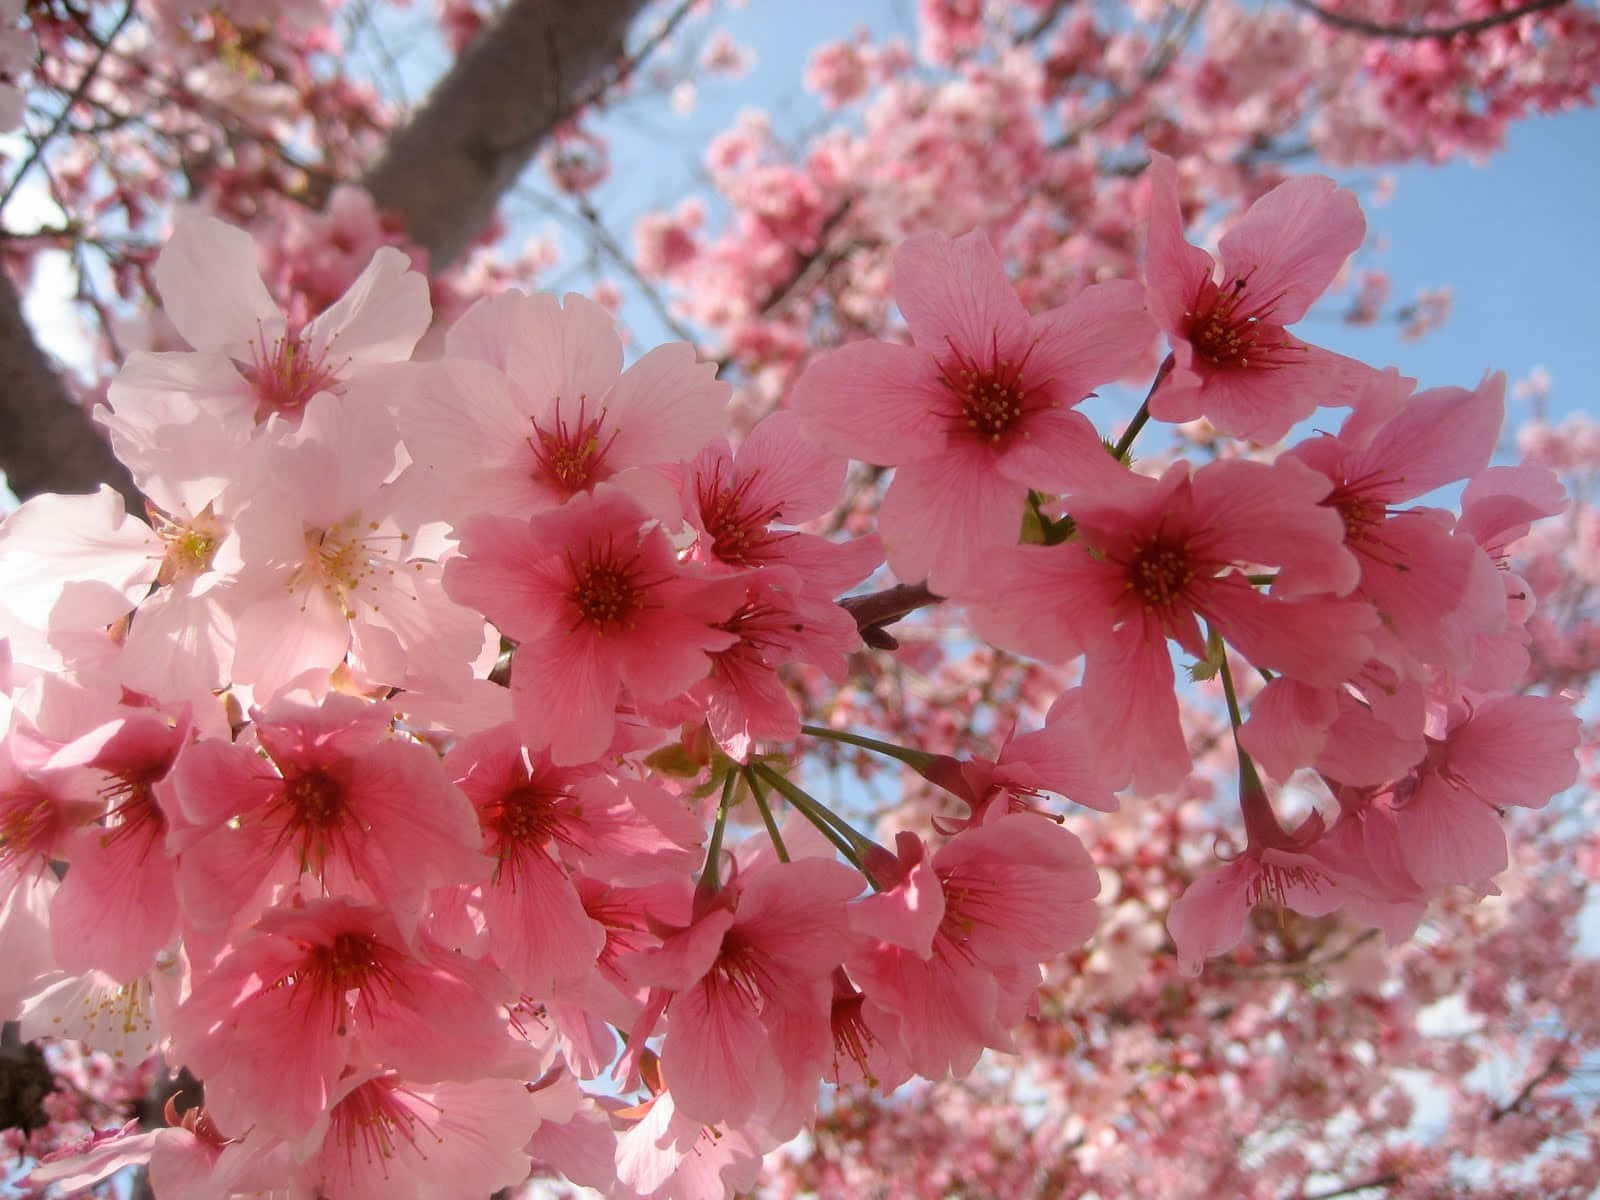 The Majestic Beauty of Sakura in Spring